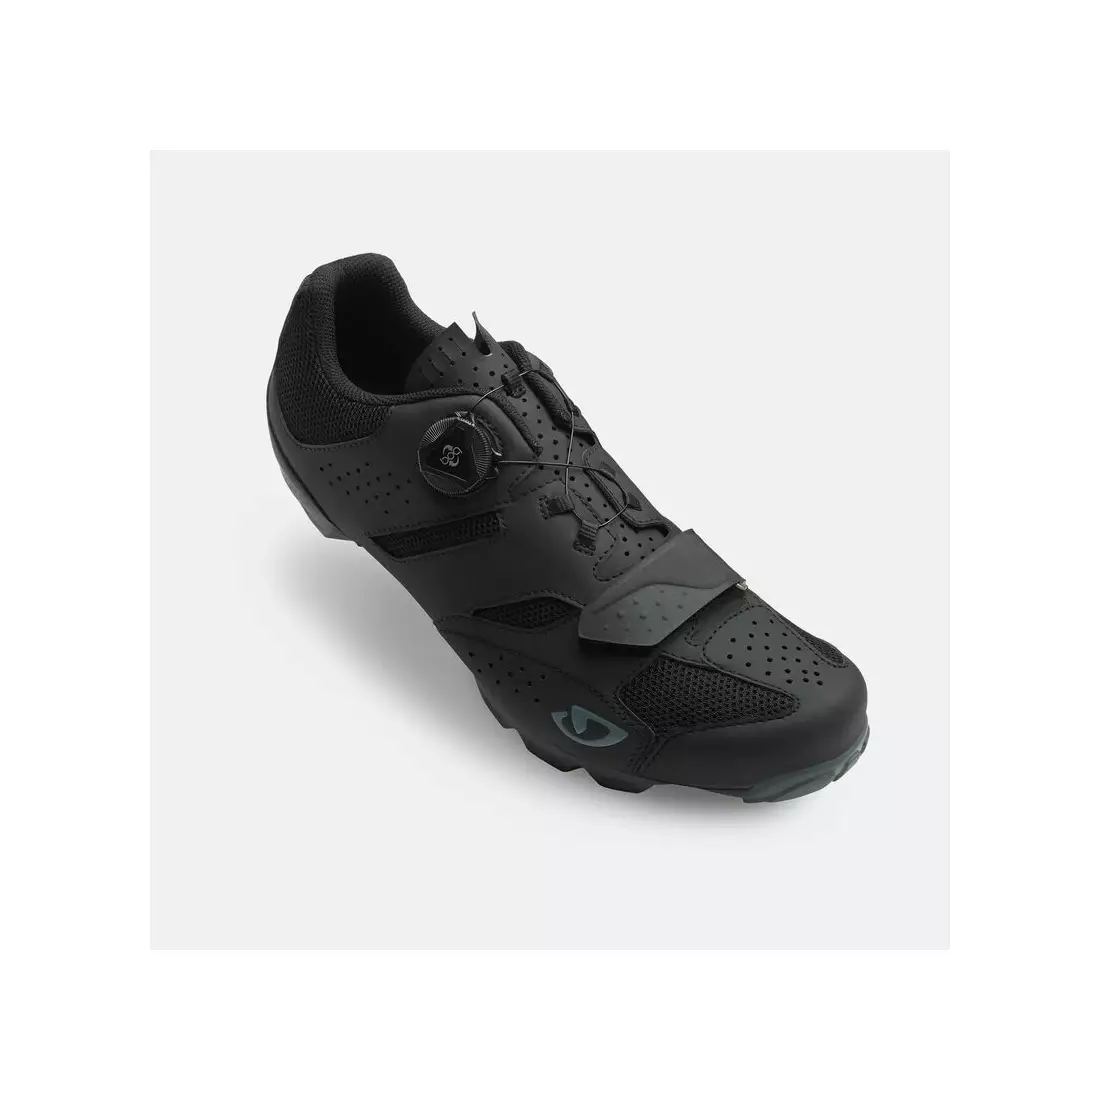 GIRO pánská cyklistická obuv CYLINDER II black GR-7126224